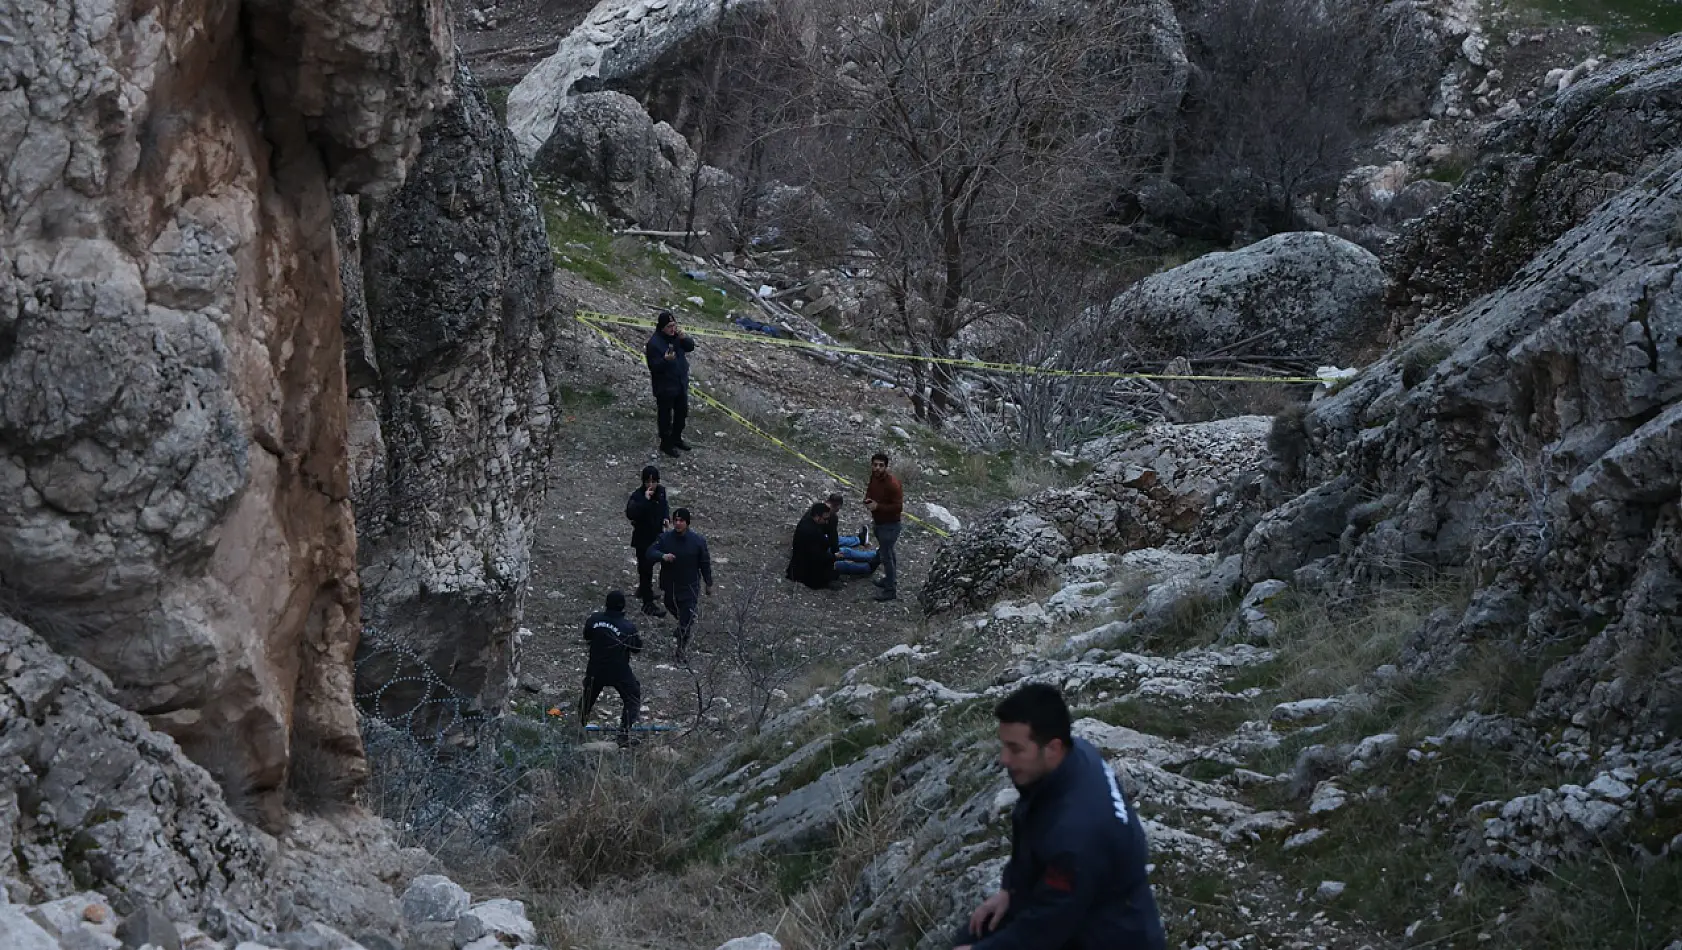 Elazığ'da Korkunç Olay Kayalıkların Arasında Ceset Bulundu!